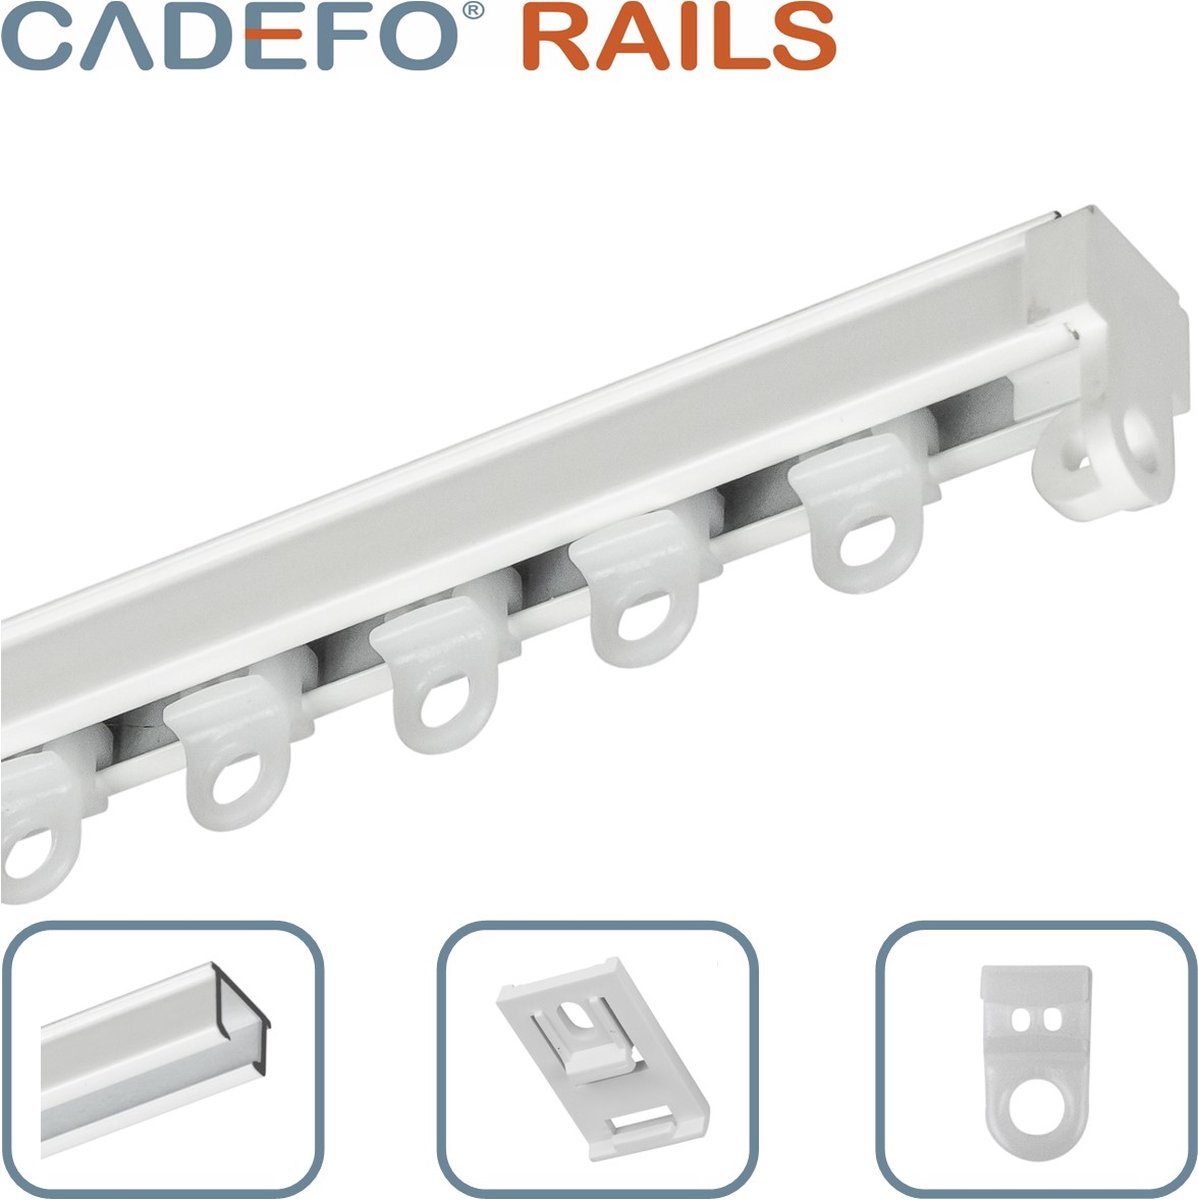 CADEFO RAILS (351 - 400 cm) Gordijnrails - Compleet op maat! - UIT 1 STUK - Leverbaar tot 6 meter - Plafondbevestiging - Lengte 393 cm